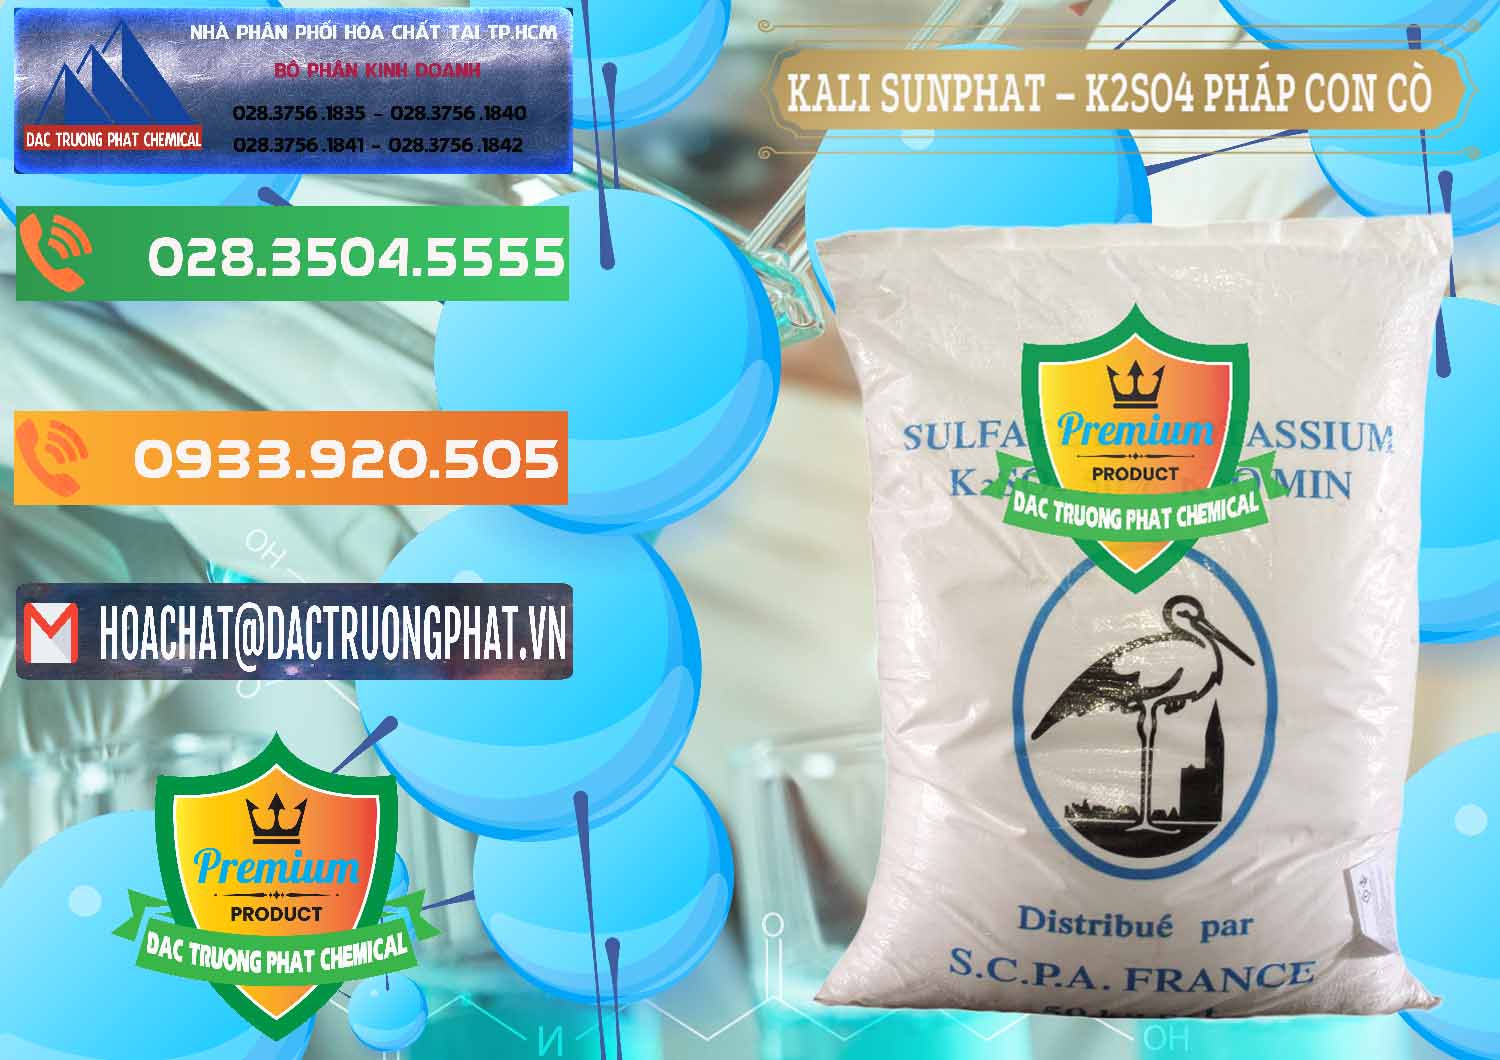 Nơi chuyên bán và phân phối Kali Sunphat – K2SO4 Con Cò Pháp France - 0083 - Công ty cung cấp và kinh doanh hóa chất tại TP.HCM - hoachatxulynuoc.com.vn